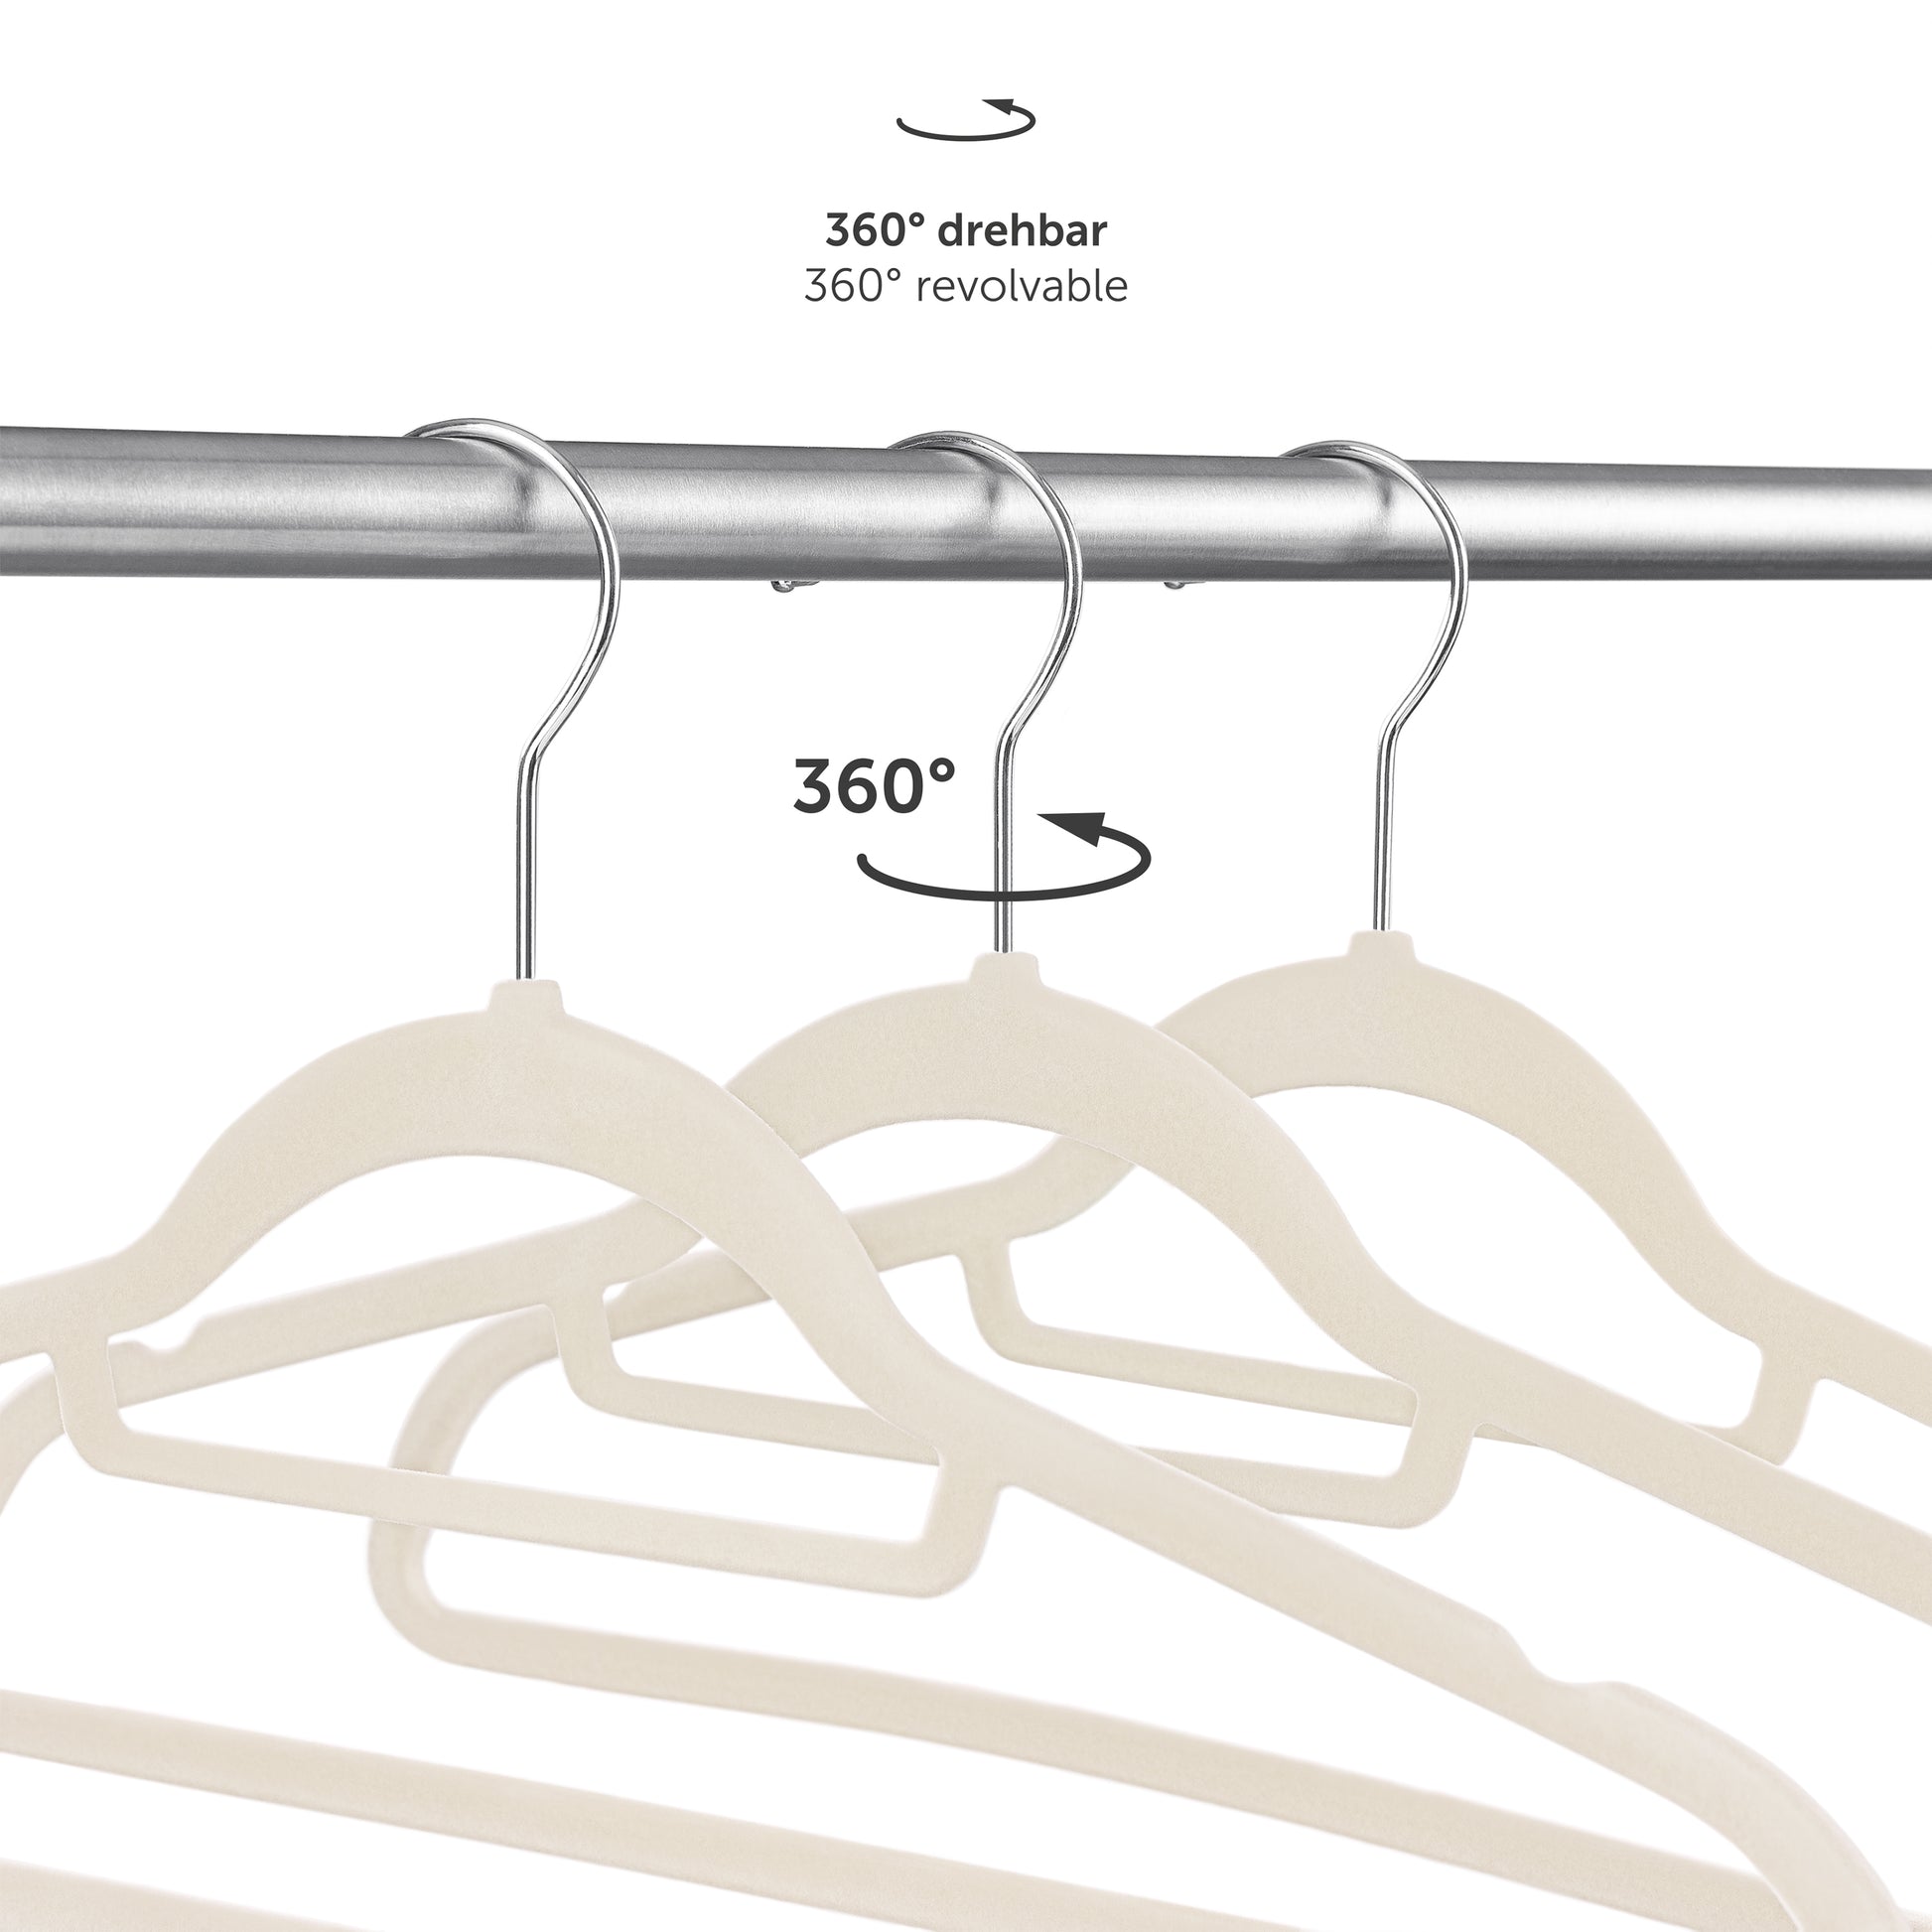 360° drehbare Kleiderbügel die Flexibilität bei der Ausrichtung der Kleidung im Schrank ermöglichen.